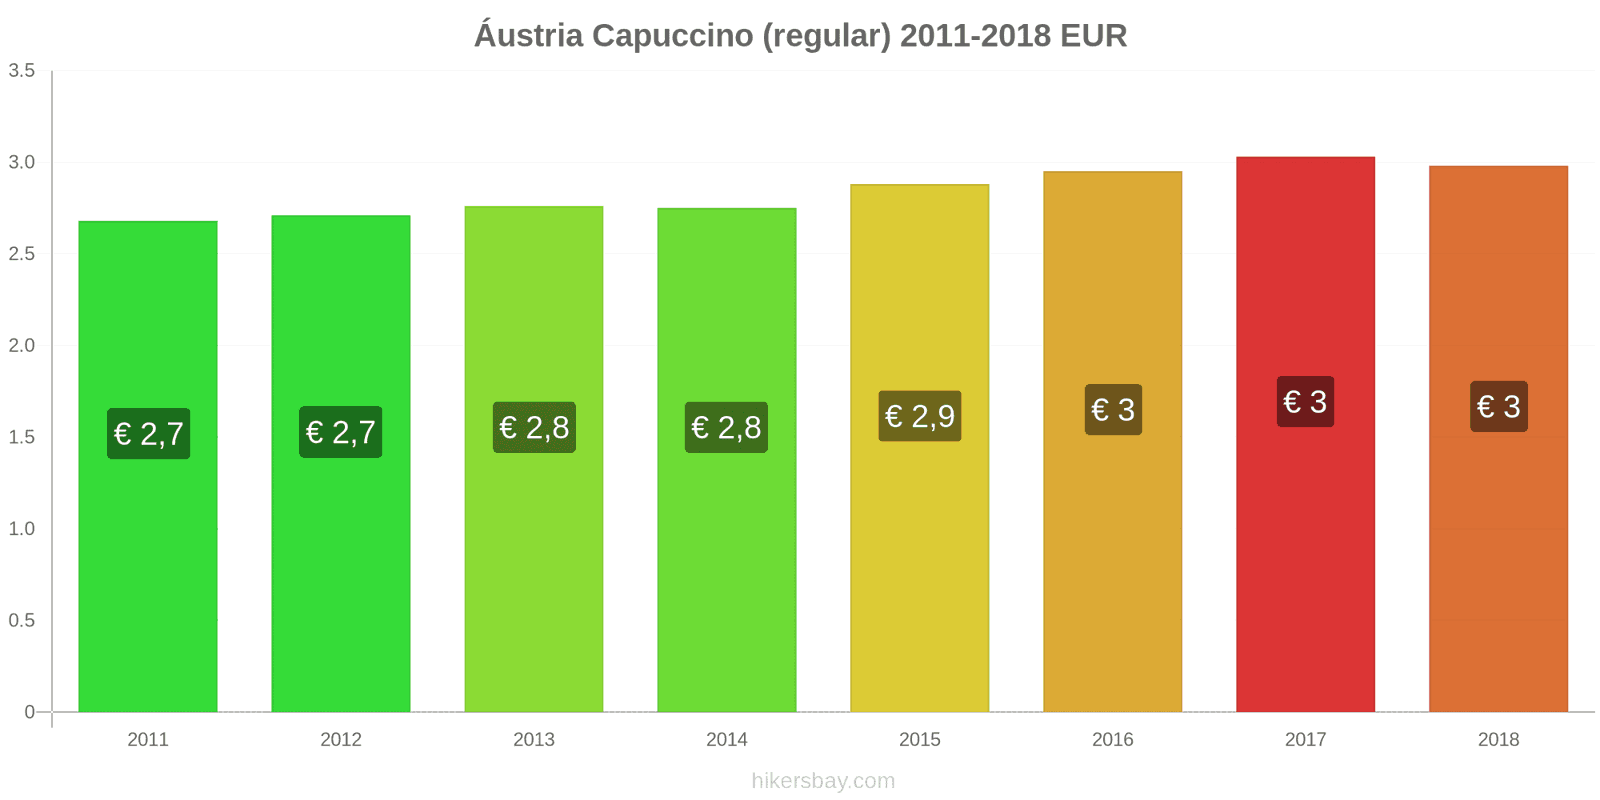 Áustria mudanças de preços Cappuccino hikersbay.com